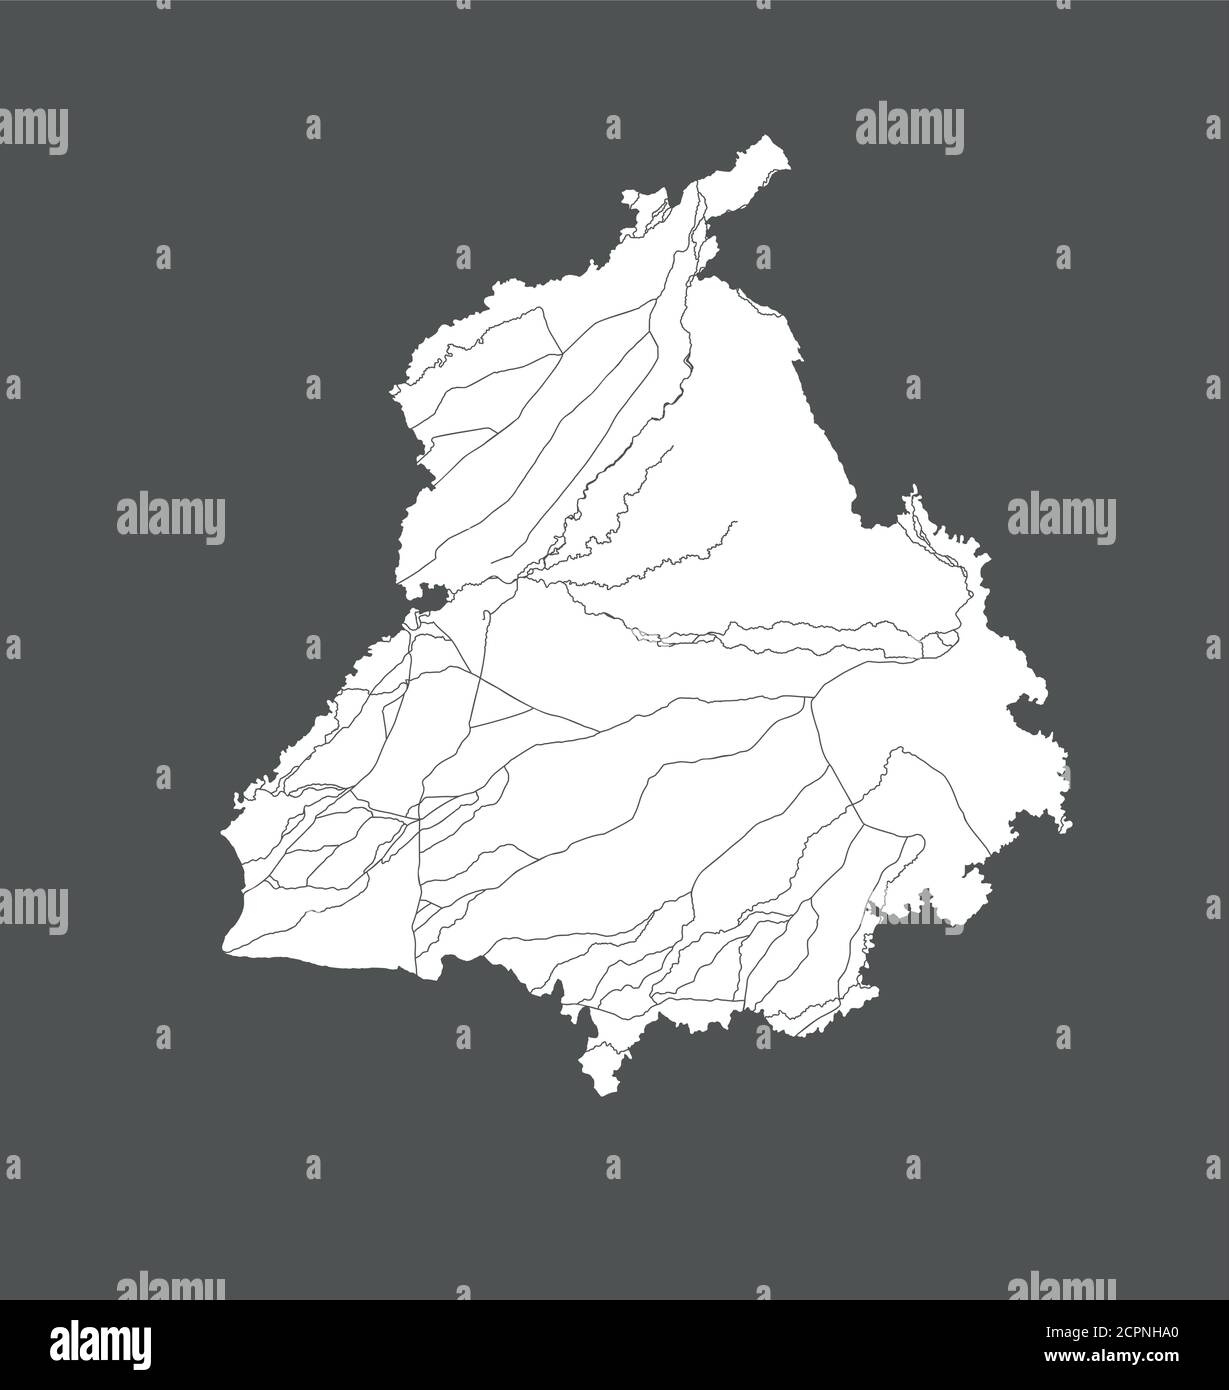 Stati dell'India - mappa del Punjab. Fatto a mano. Fiumi e laghi sono mostrati. Guardate le mie altre immagini di serie cartografiche - sono tutte molto detaile Illustrazione Vettoriale